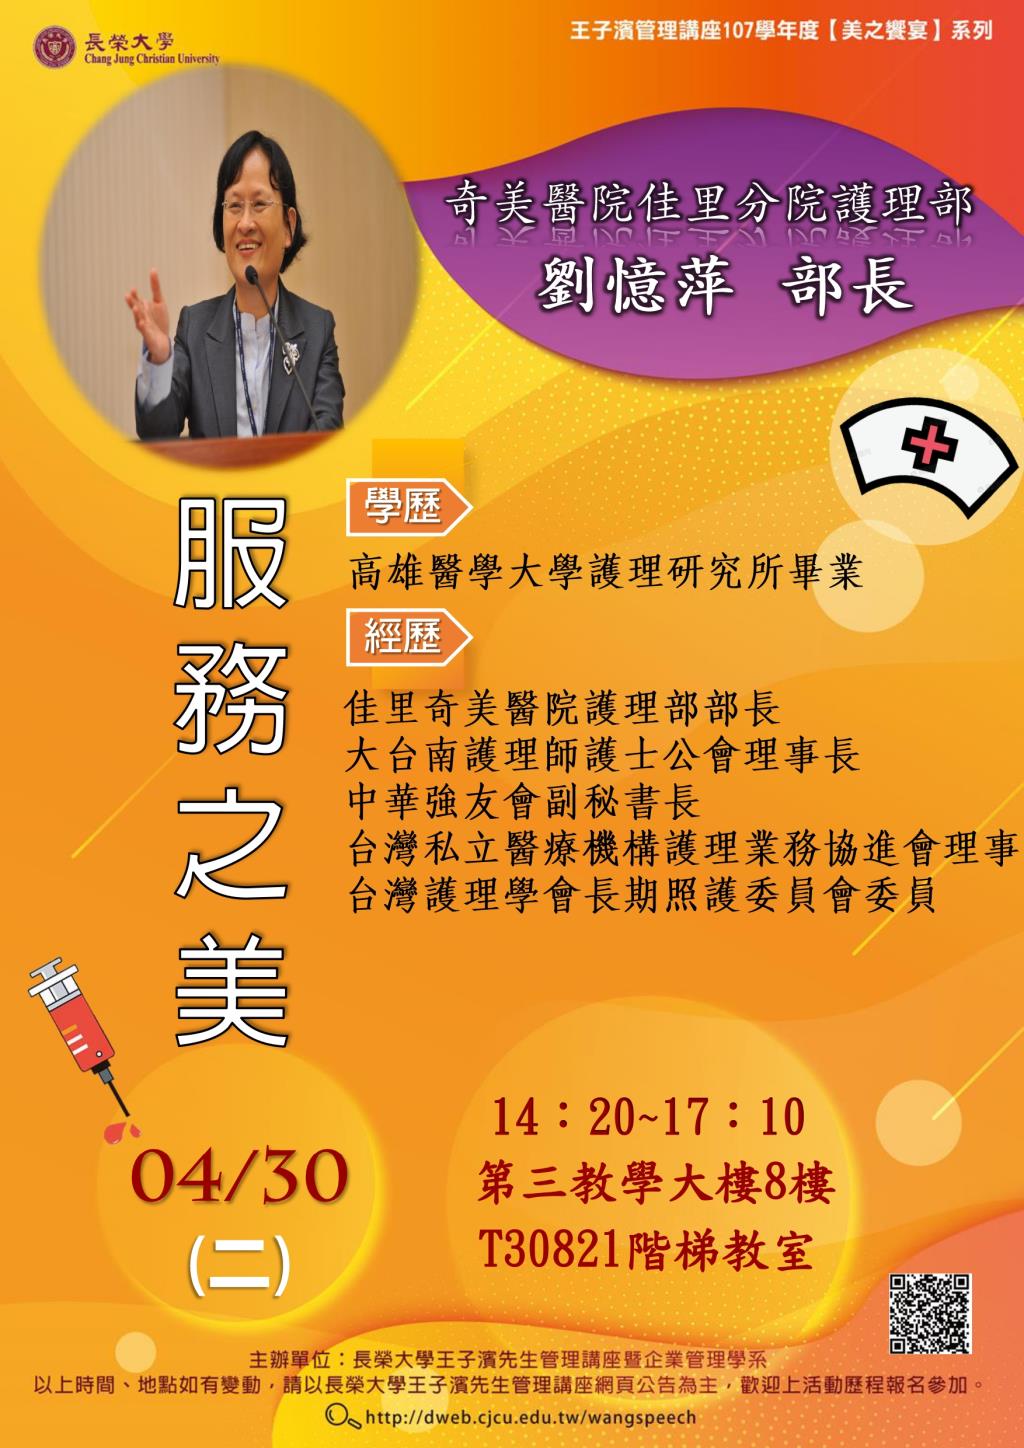 敬邀參加本週二下午(04/30)王子濱先生管理講座---奇美醫院佳里分院護理部 劉憶萍部長